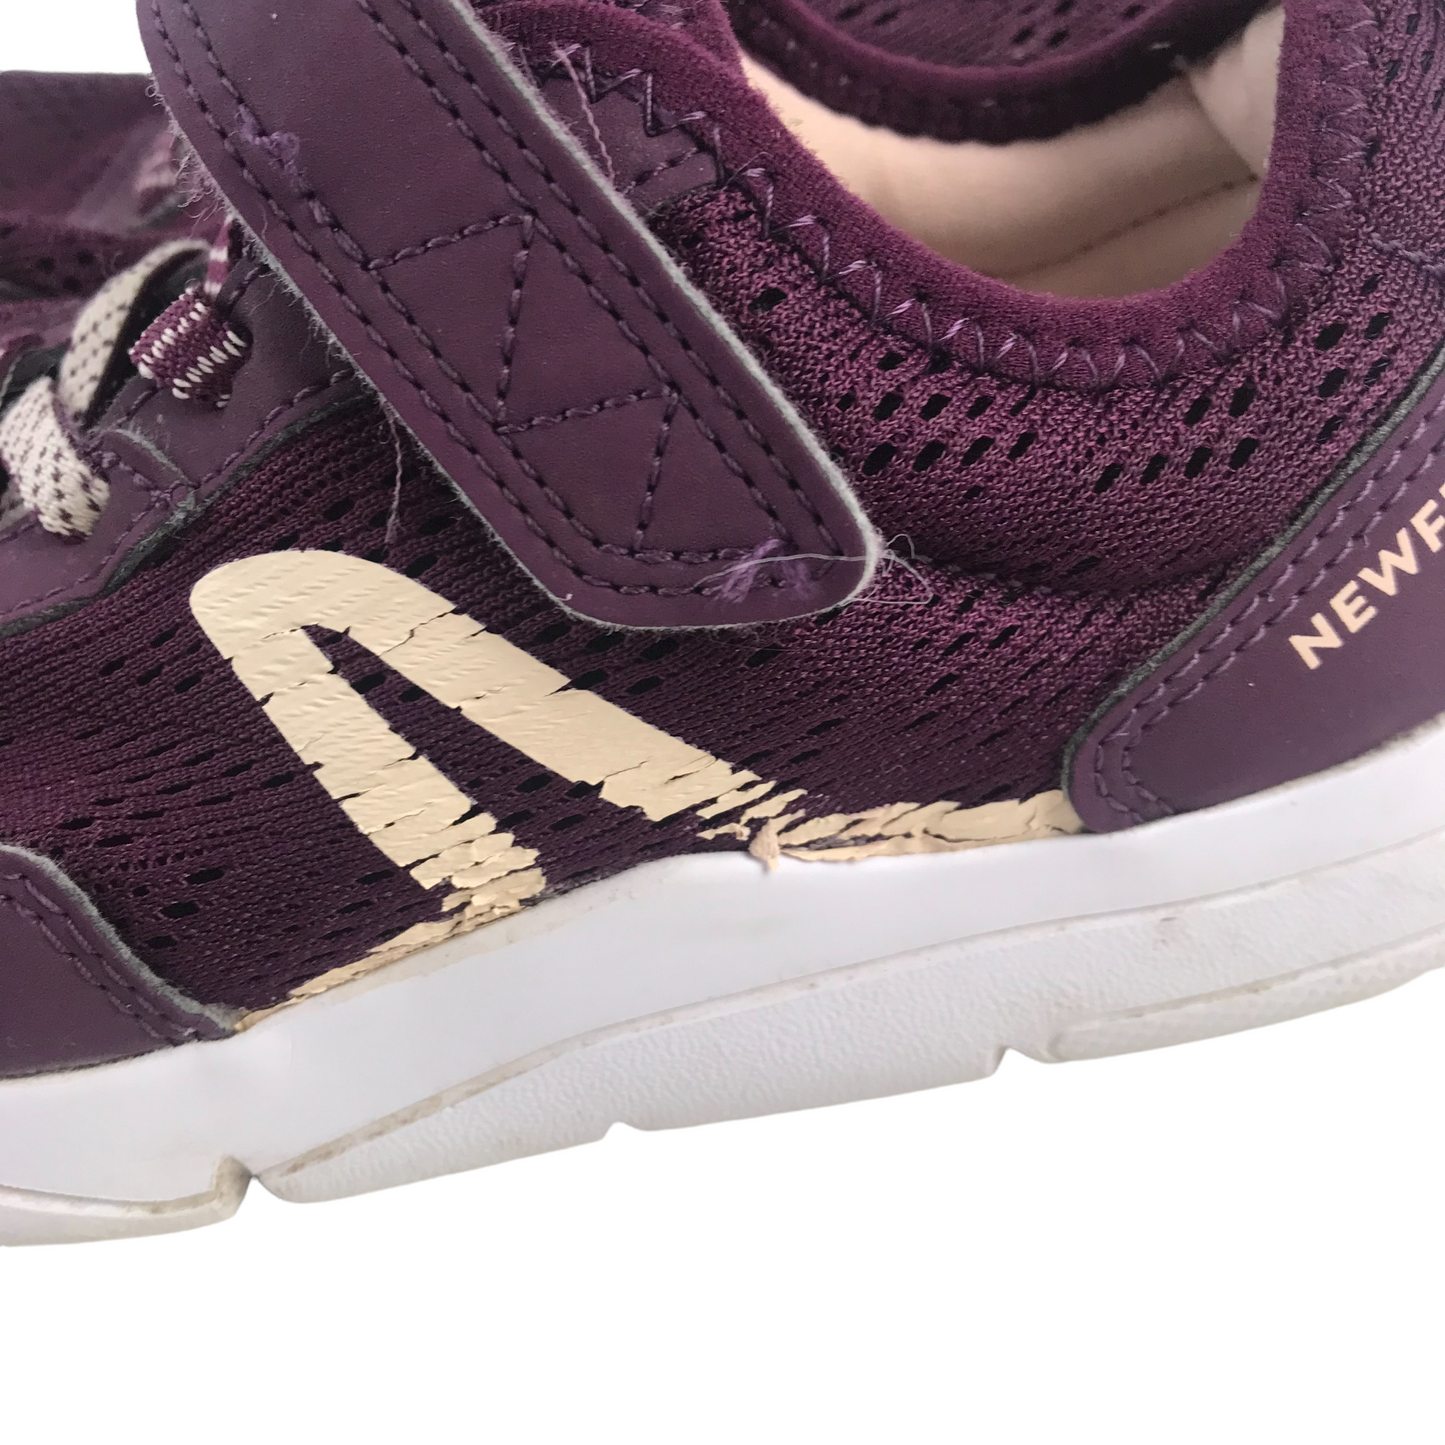 Newfeel Purple Trainers Shoe Size 1.5